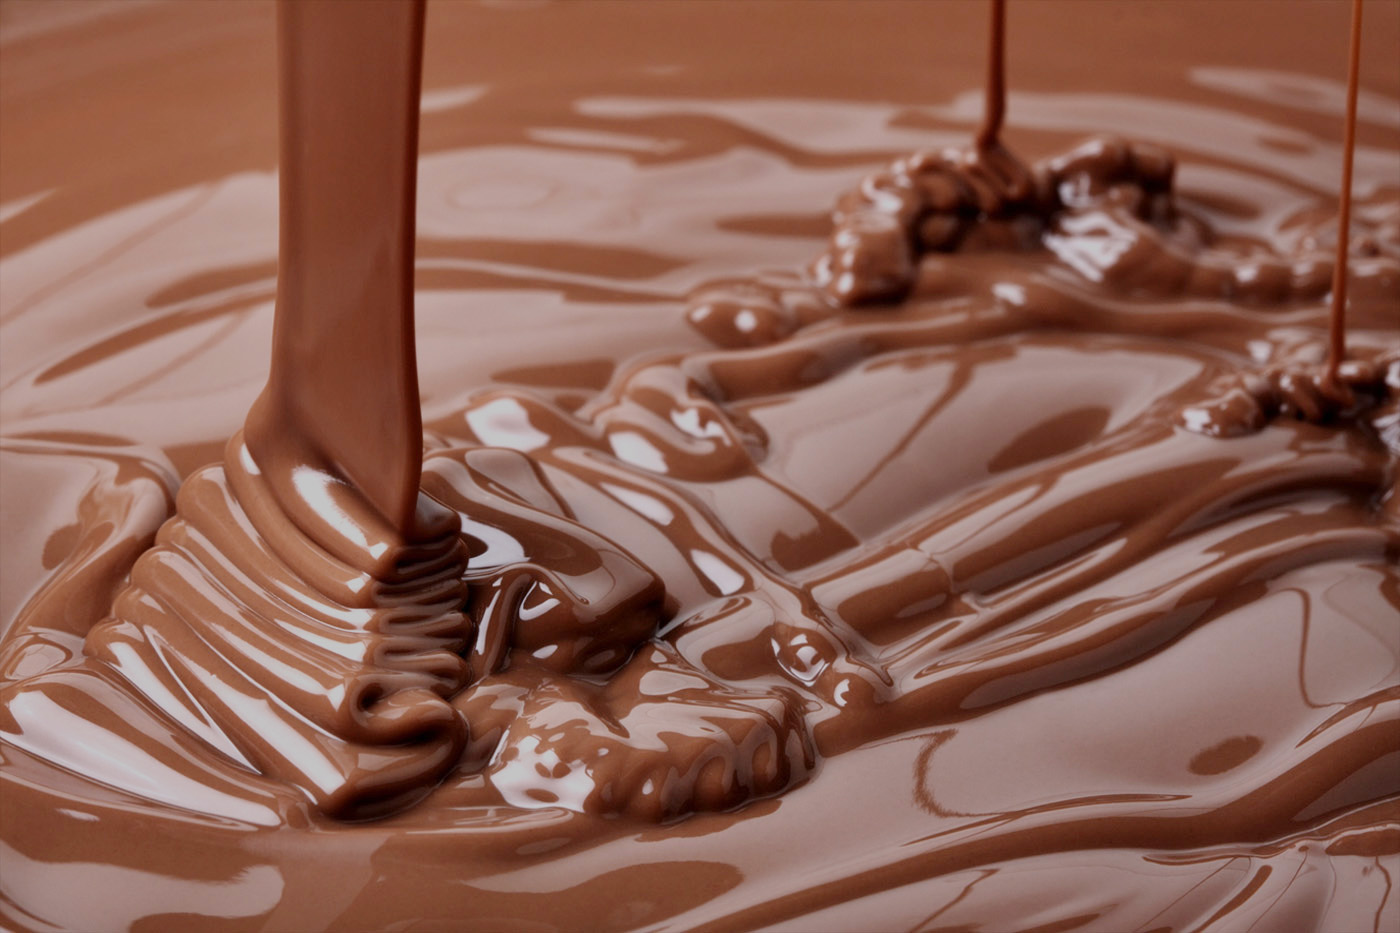    خبر غير سار لعشاق الشيكولاتة..‏ اختفاء الشوكولاتة بعد 40 سنة